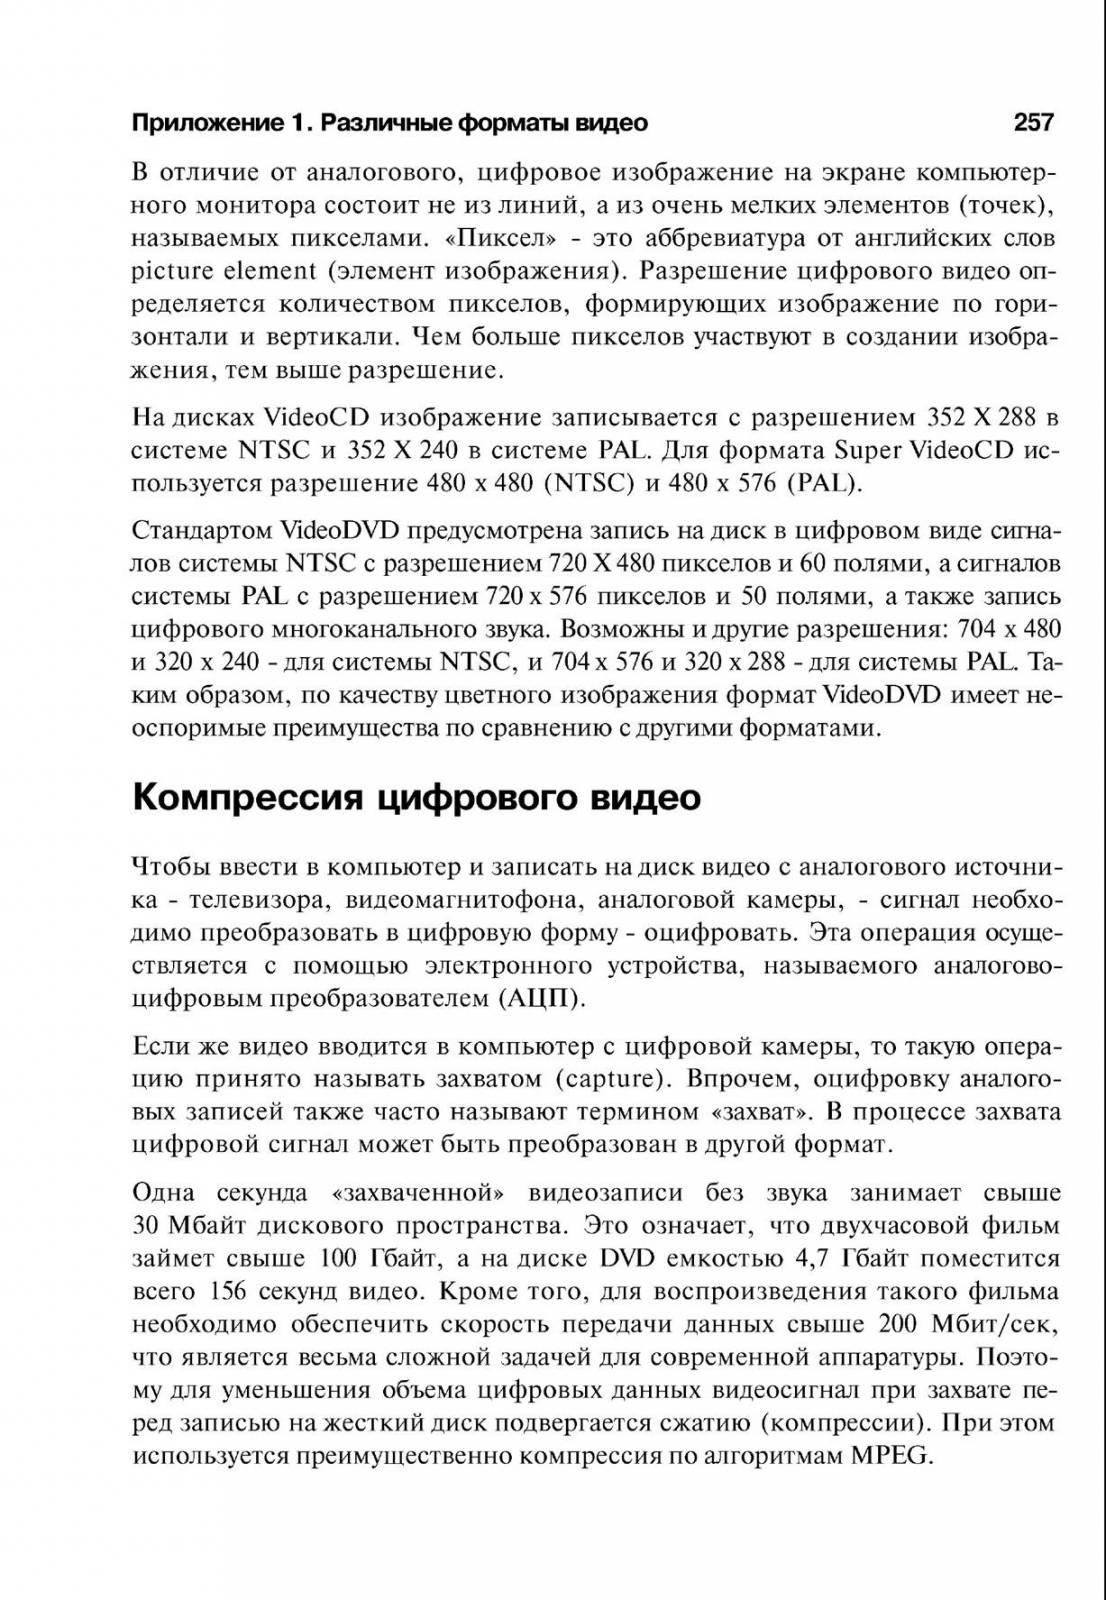 http://redaktori-uroki.3dn.ru/_ph/14/301923376.jpg